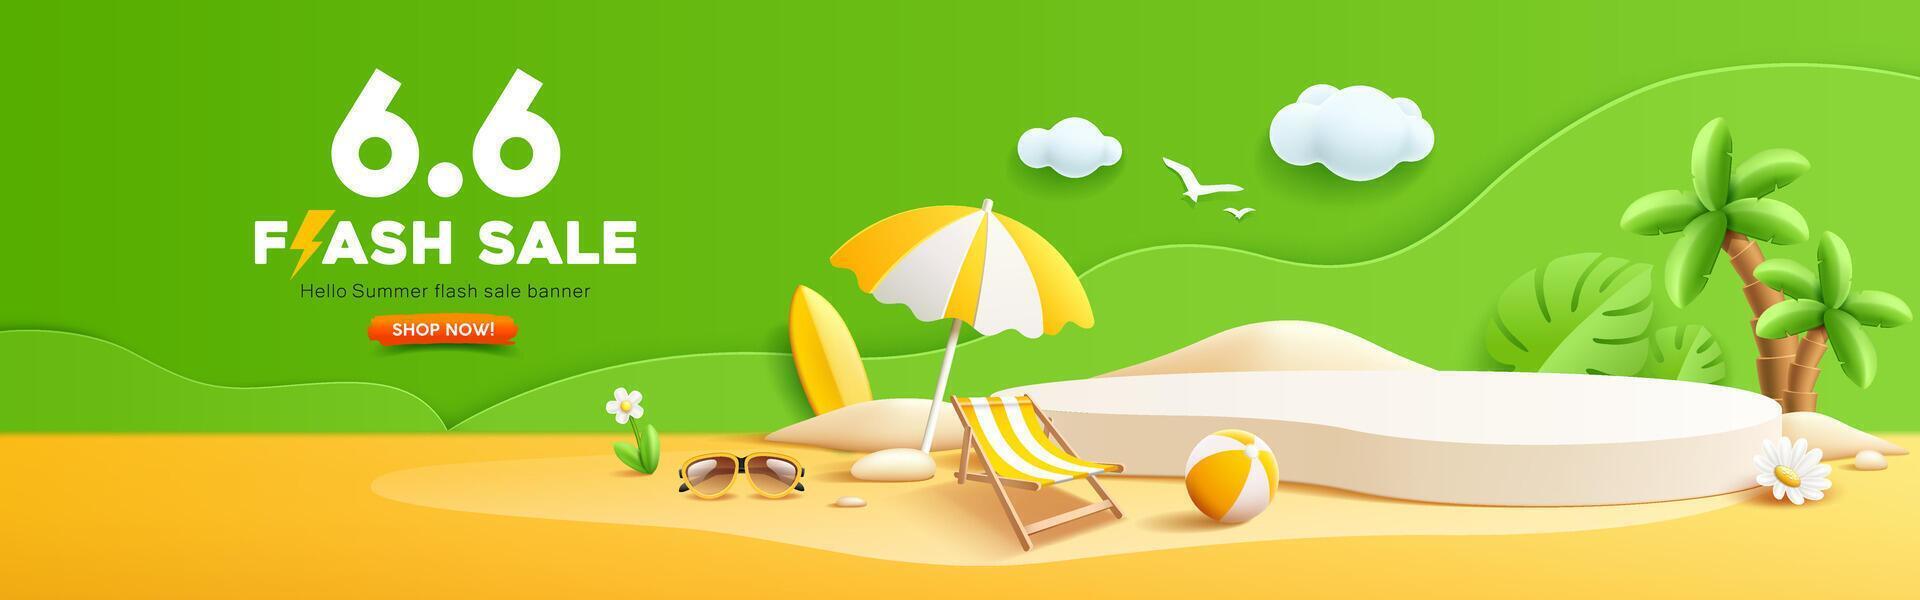 Sommer- Blitz Verkauf, Podium Anzeige, Stapel von Sand, Kokosnuss Baum, Strand Regenschirm, Strand Stuhl, Strand Ball, Sonnenbrille, Banner Design vektor